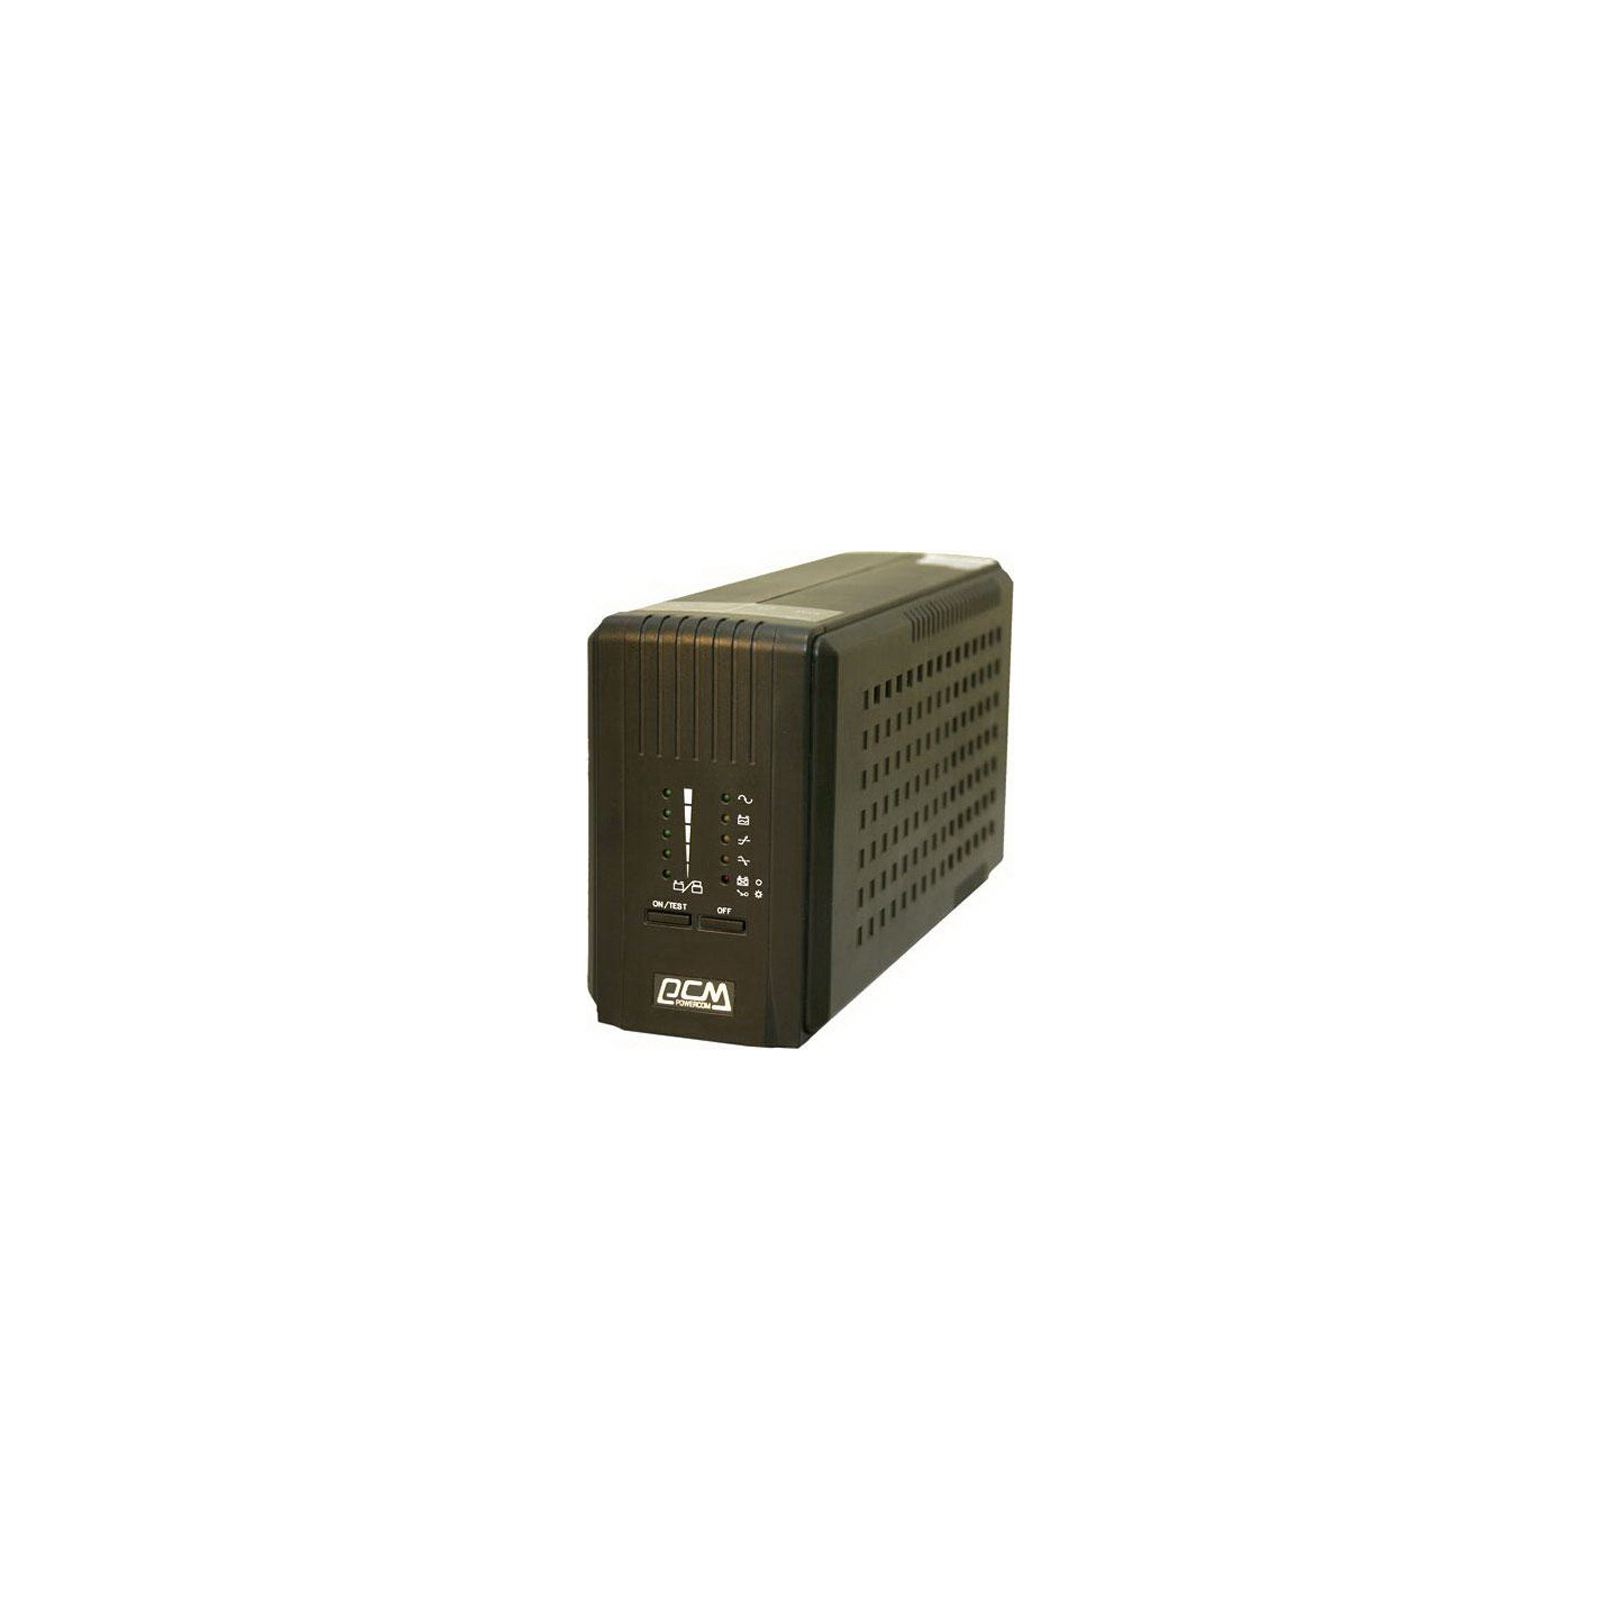 Источник бесперебойного питания Powercom Smart King Pro SKP-500A (SKP-500A)